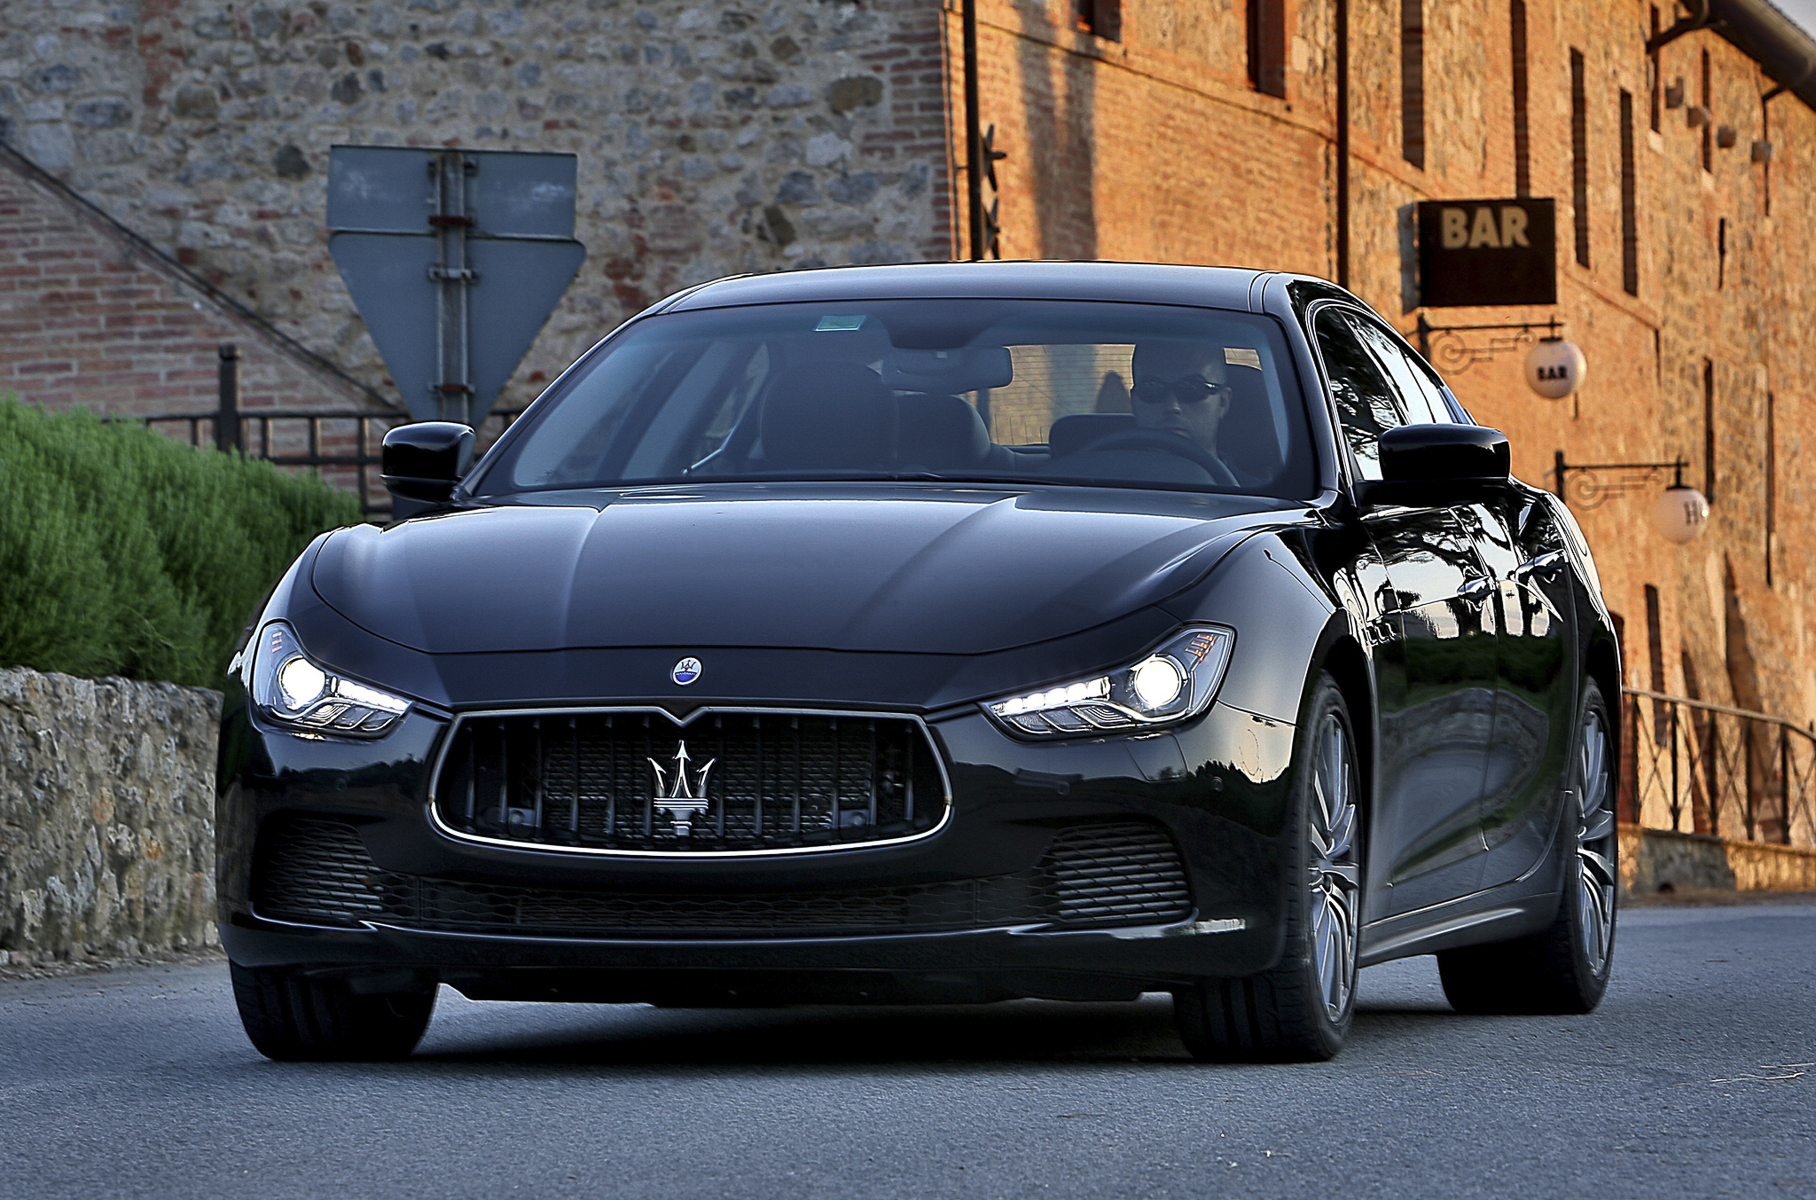 ## Maserati Ghibli Автобренды с богатым прошлым любят смахивать пыль с легендарных имен. В одних случаях, как с Dodge Challenger, они трепетно восстанавливают историческую справедливость. В других пускаются в эксперименты и начинают новую эпопею. Так поступила Maserati, вернувшая название Ghibli для среднеразмерного седана классической компоновки с наддувными V6 и V8.